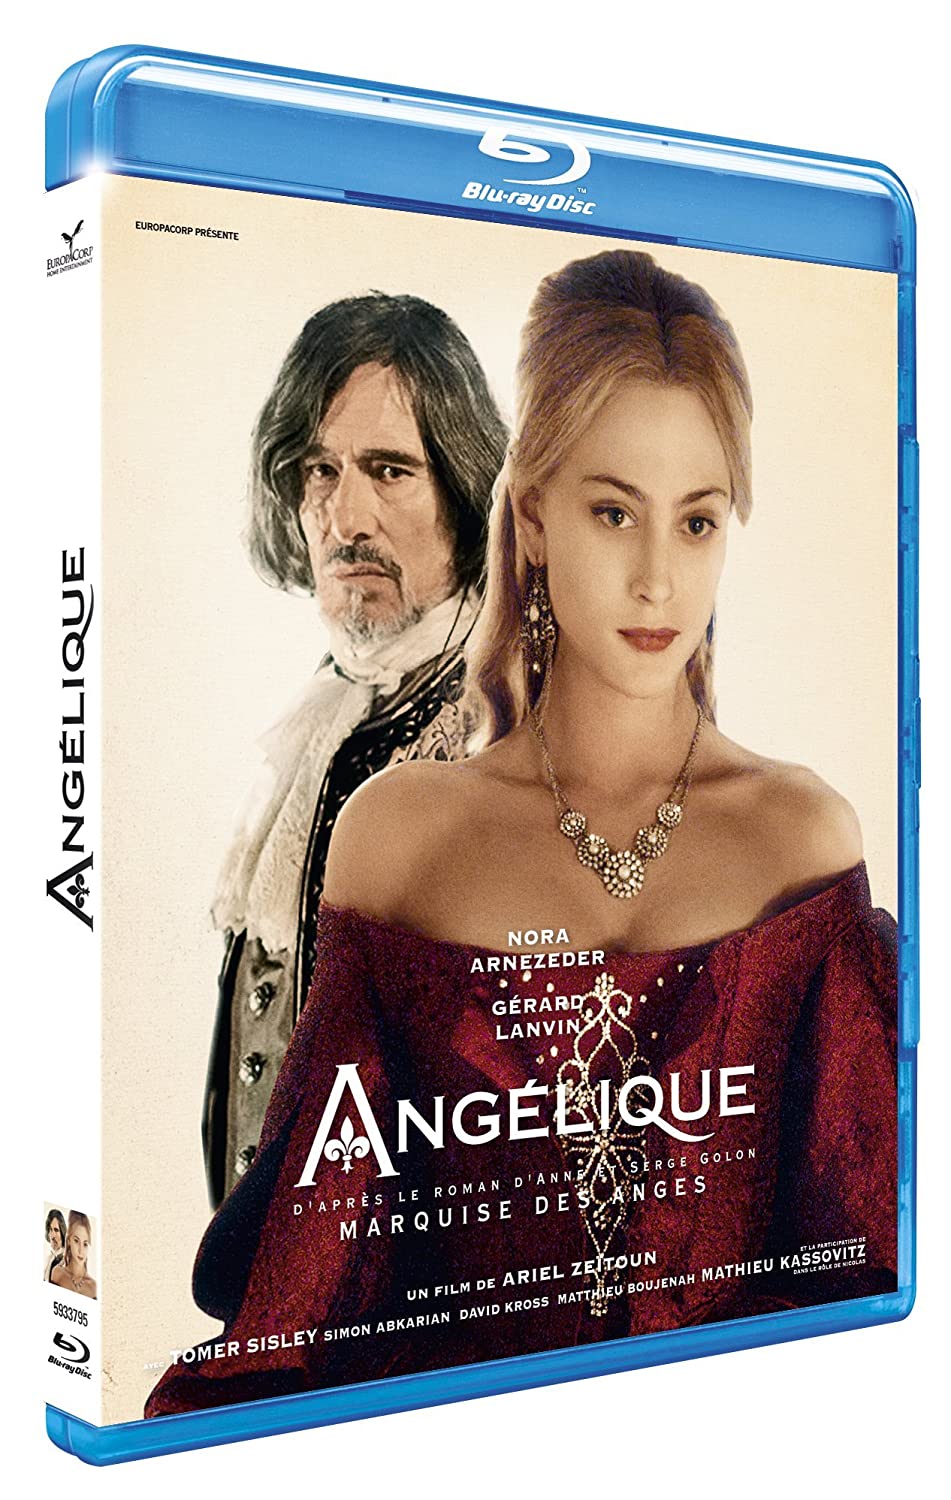 Angélique, Marquise des Anges - 2013 - Ariel Zeitoun 81cLVCroihL._SL1500_